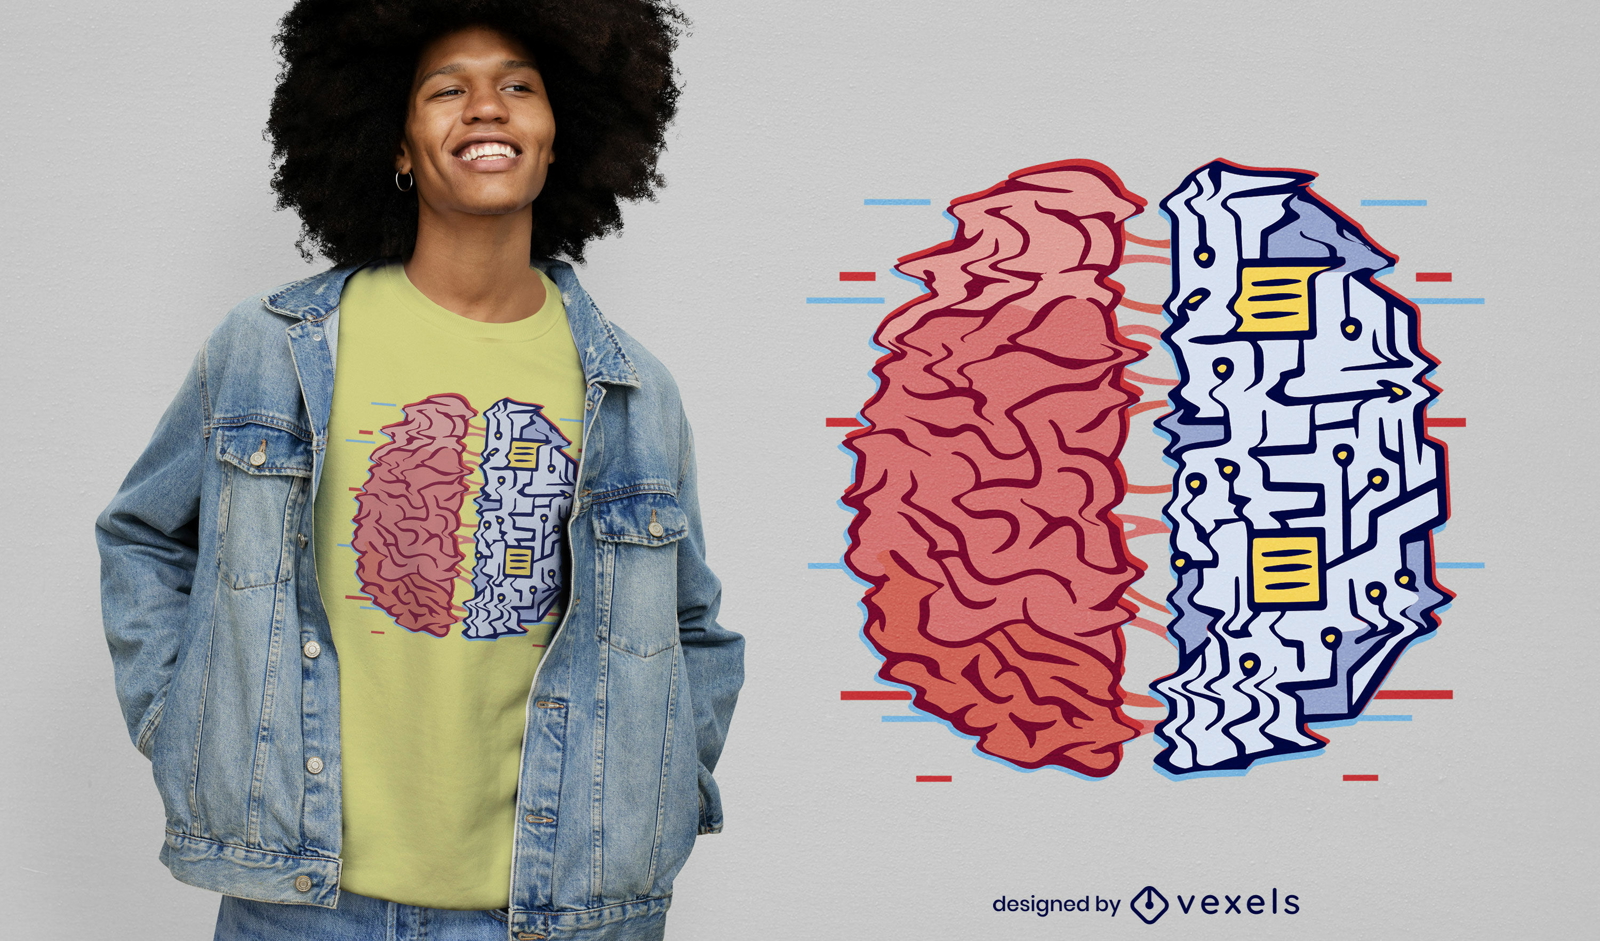 Diseño de camiseta de cerebro humano de máquina.